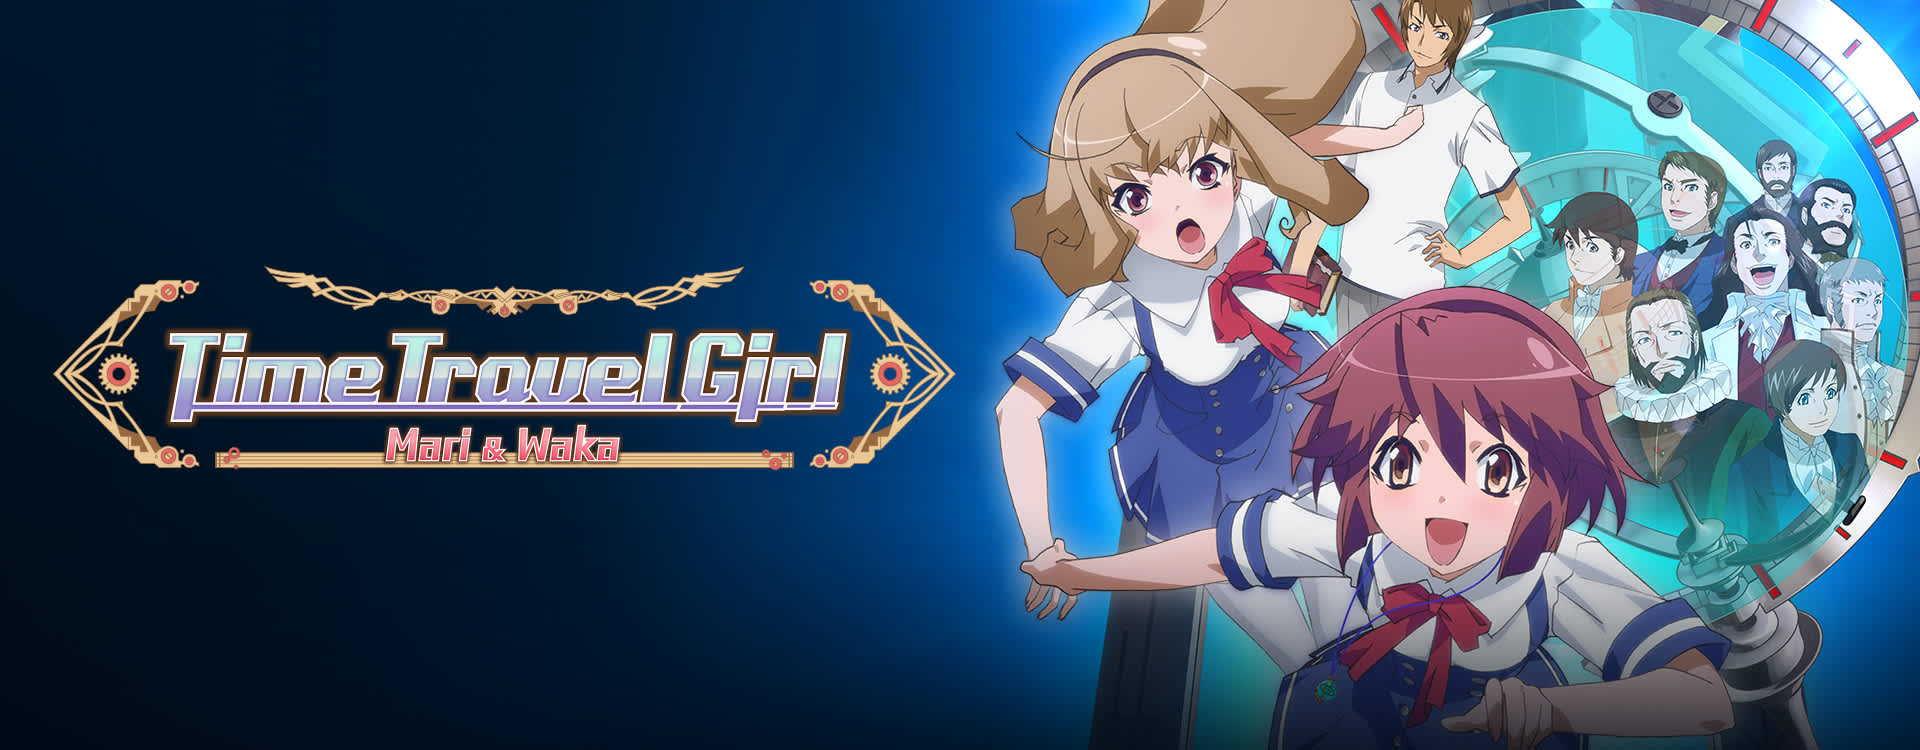 Anime Time Travel Girl - HD Wallpaper 